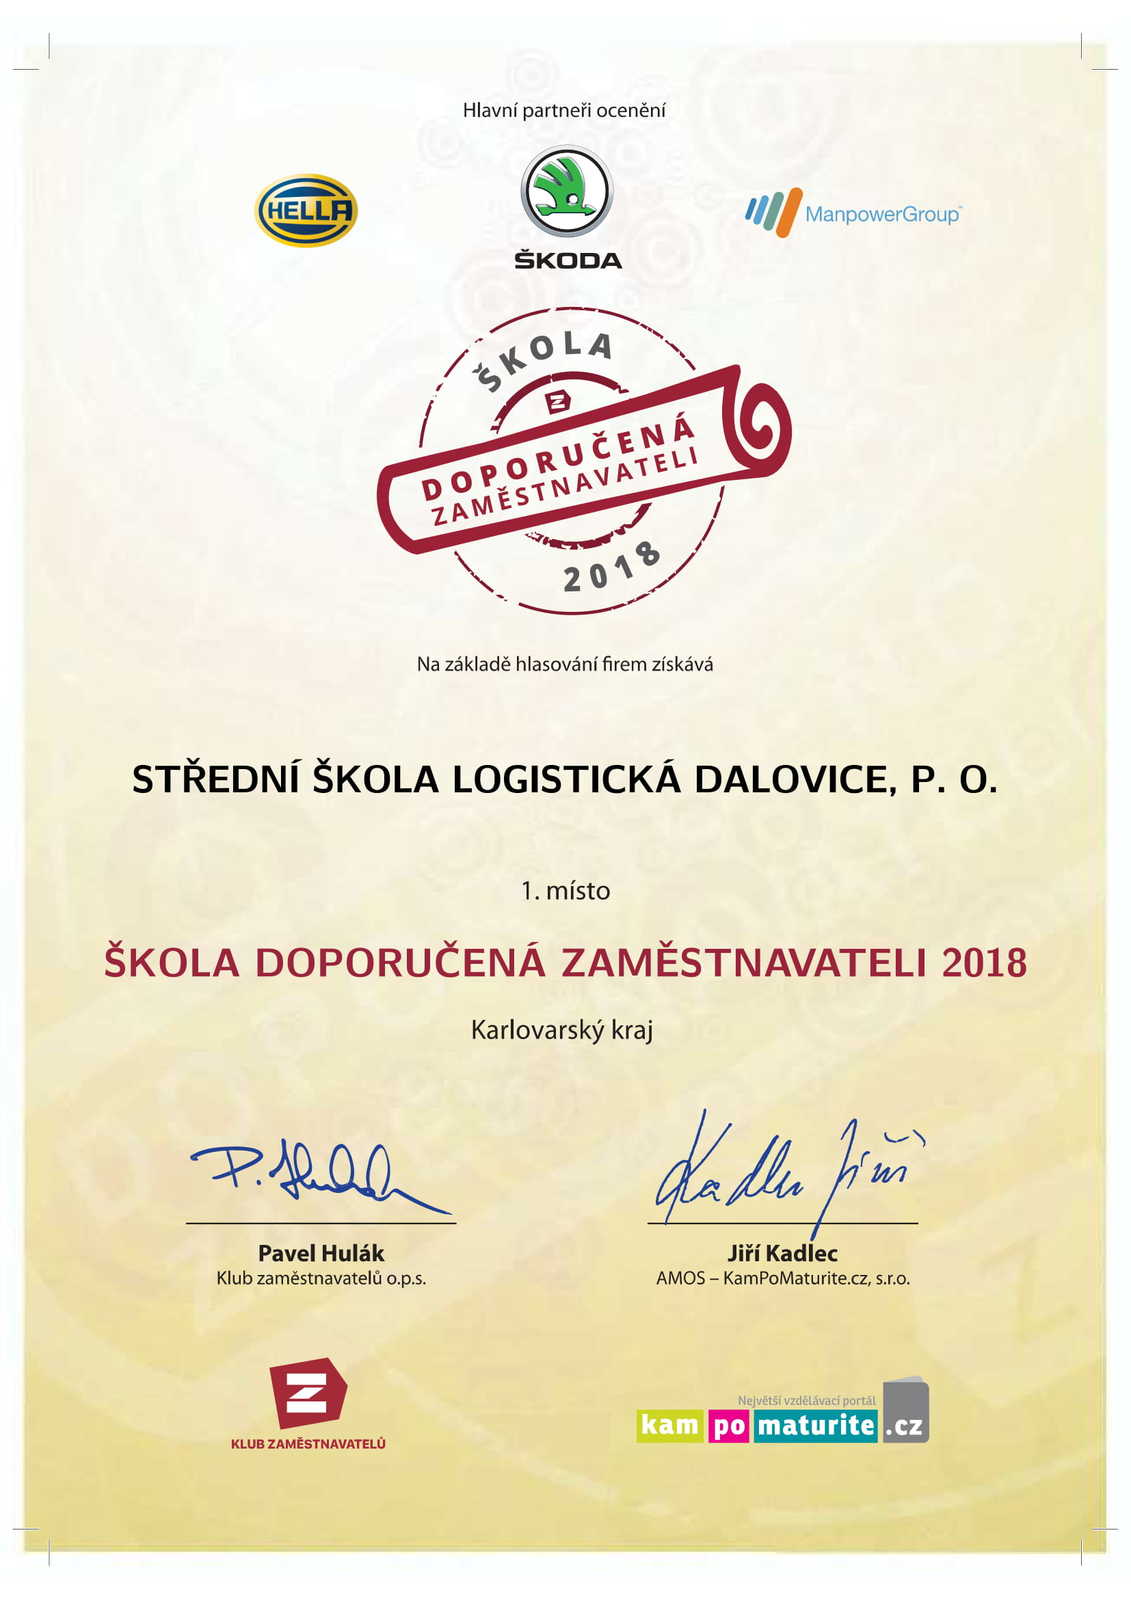 Diplom - Skola doporucena zamestnavateli 2018.jpg